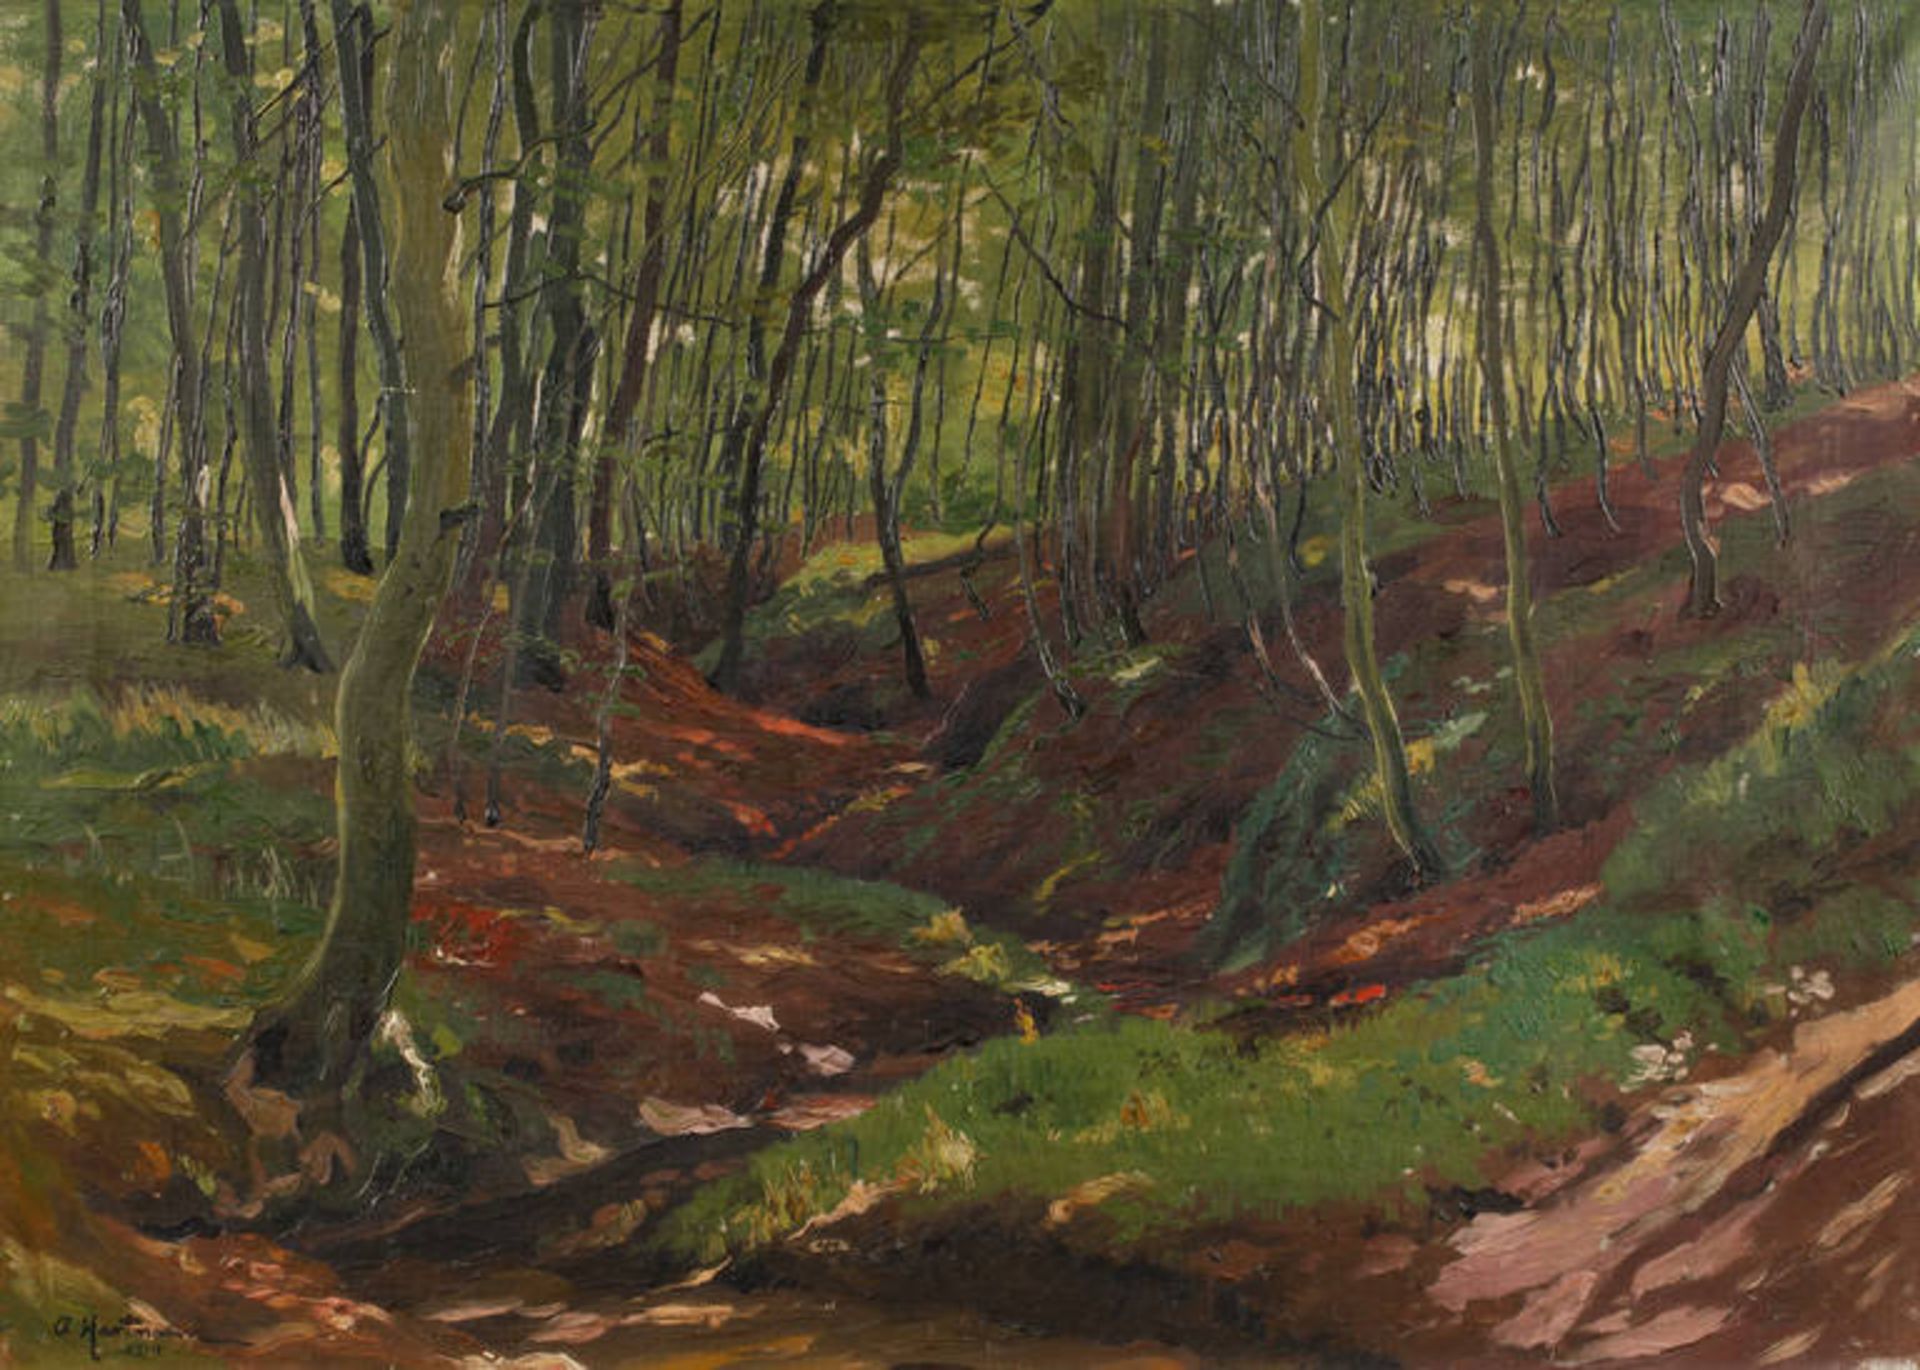 Hartmann, Waldinneres
Blick in sommerlich beleuchteten Laubwald mit schmalem Bachlauf, pastose,